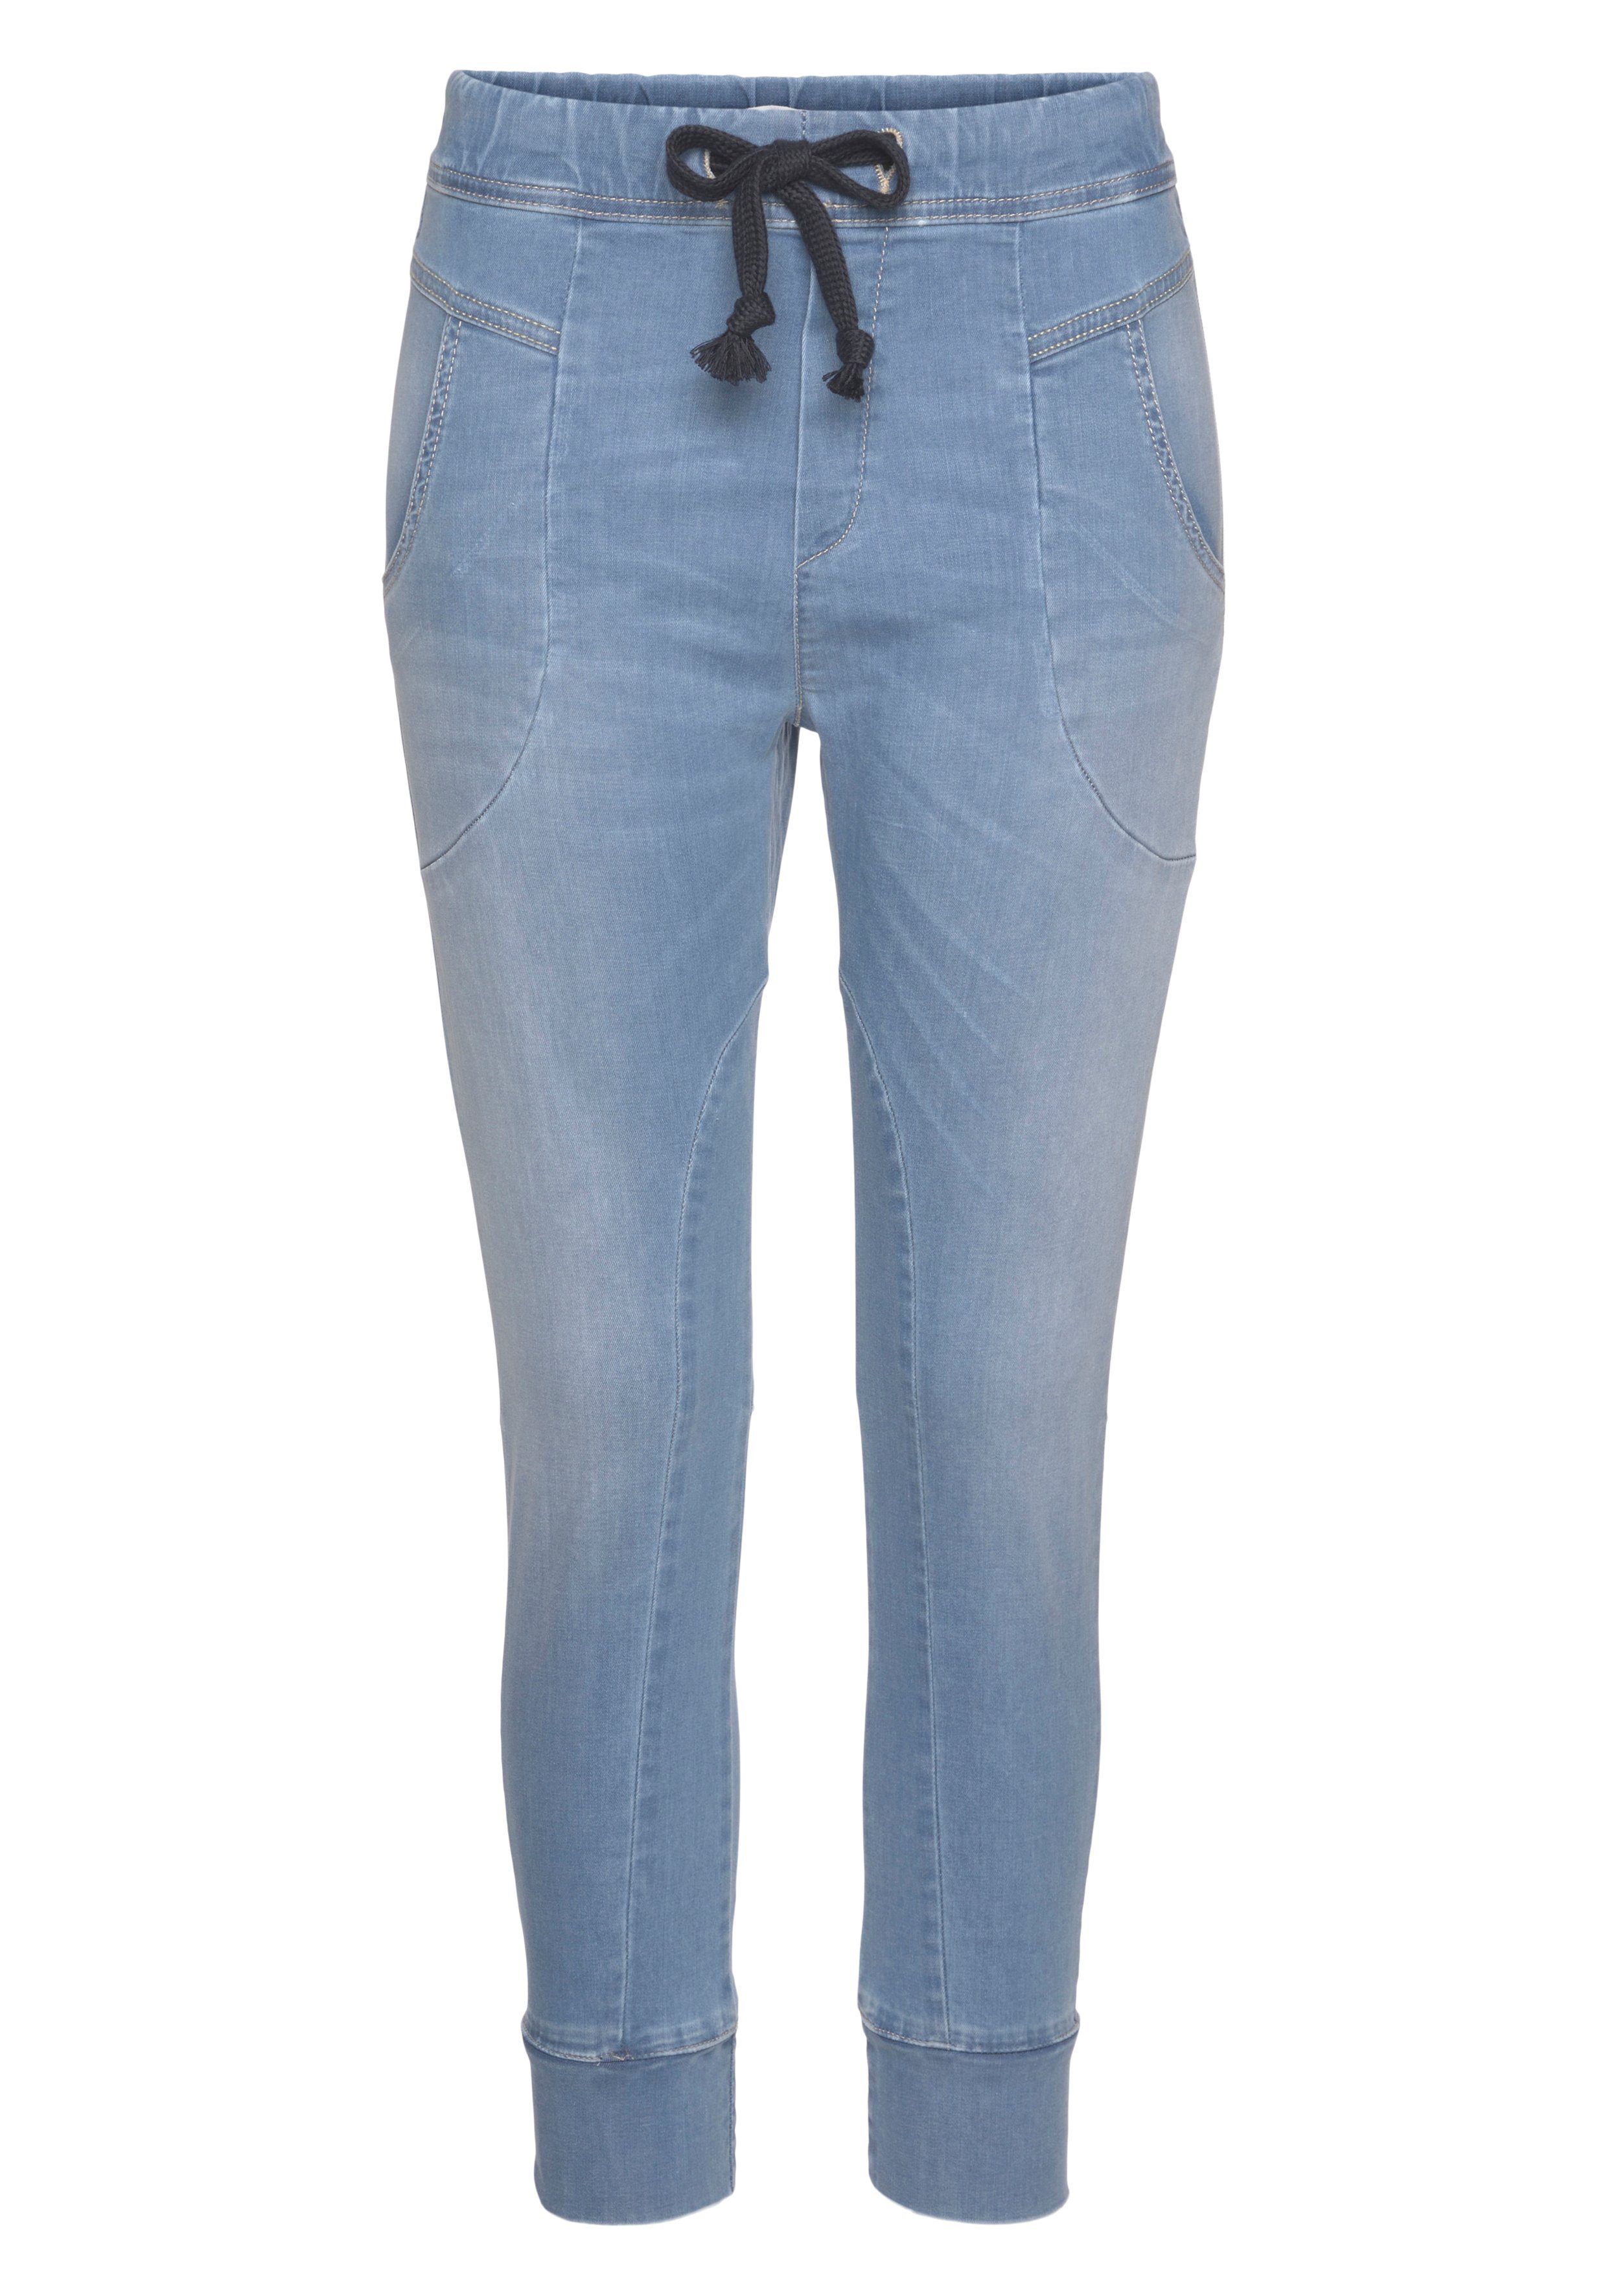 Damen Jeans Please Jeans Jogg Pants P51G im Relax-Fit mit praktischem Gummizug-Bund